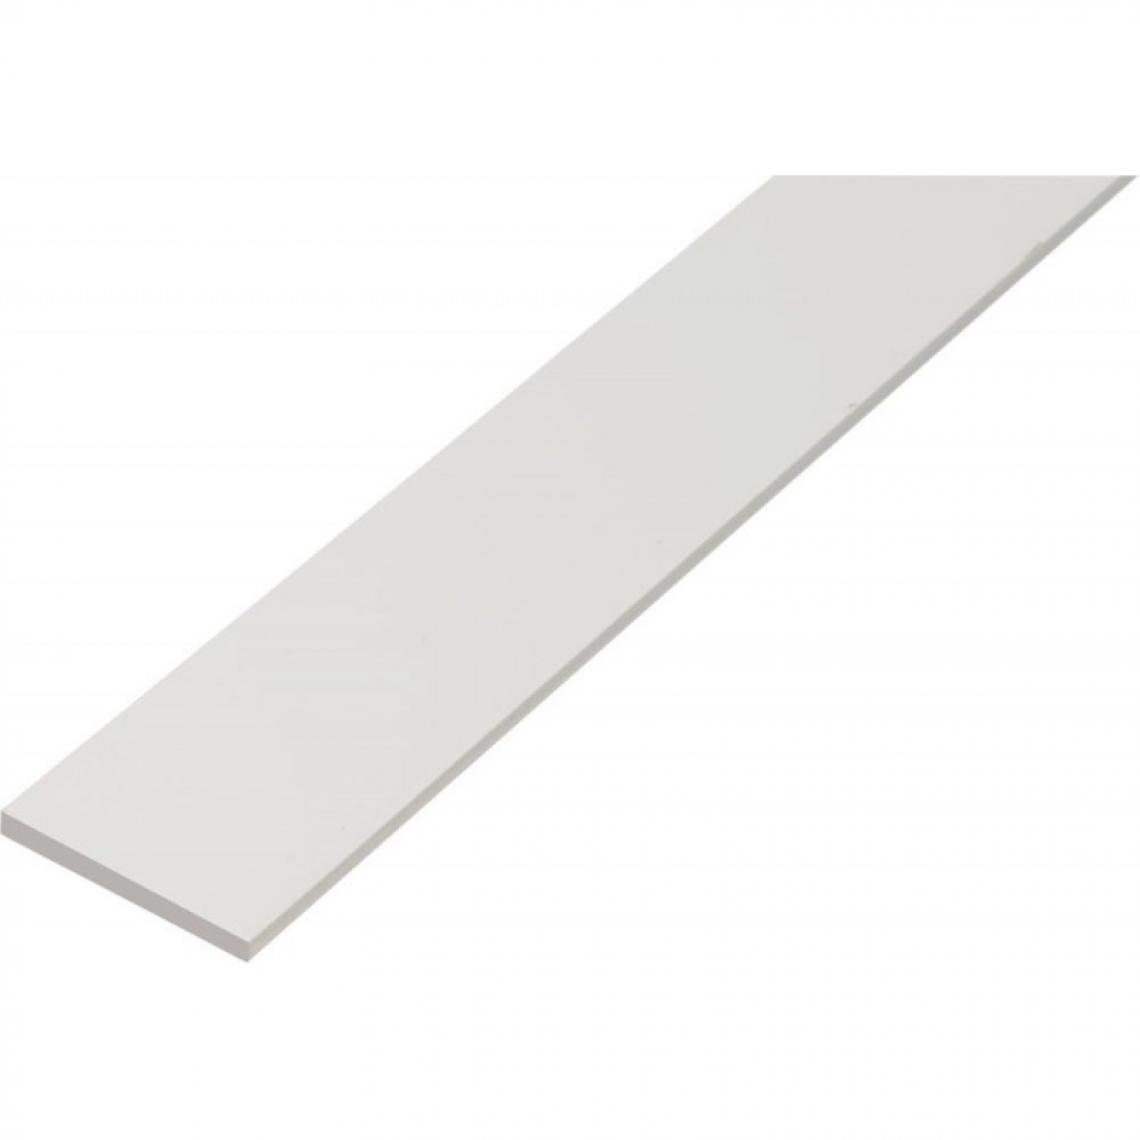 Gah Alberts - Profil Plastique,blanc,30x3/2m - Profilé de finition pour carrelage